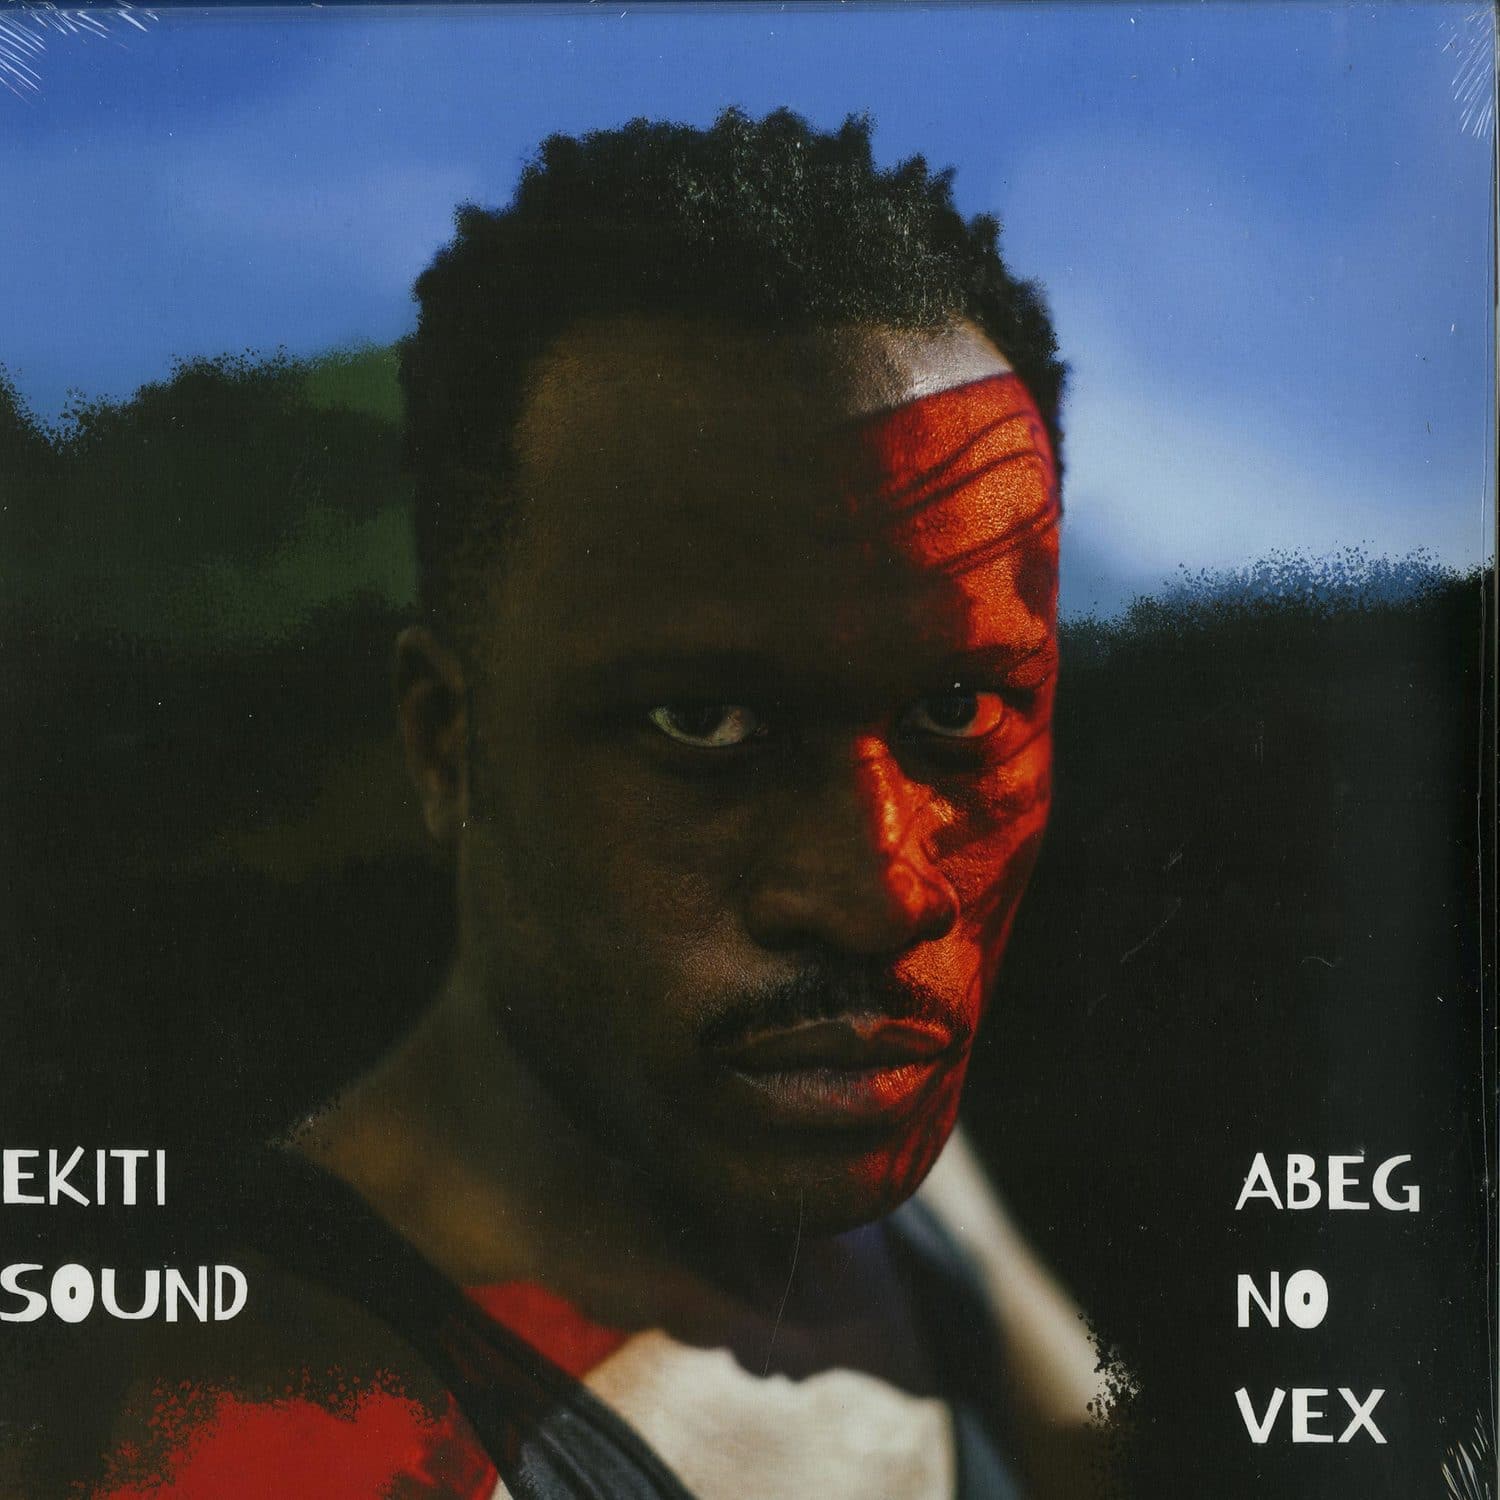 Ekiti Sound - ABEG NO VEX 